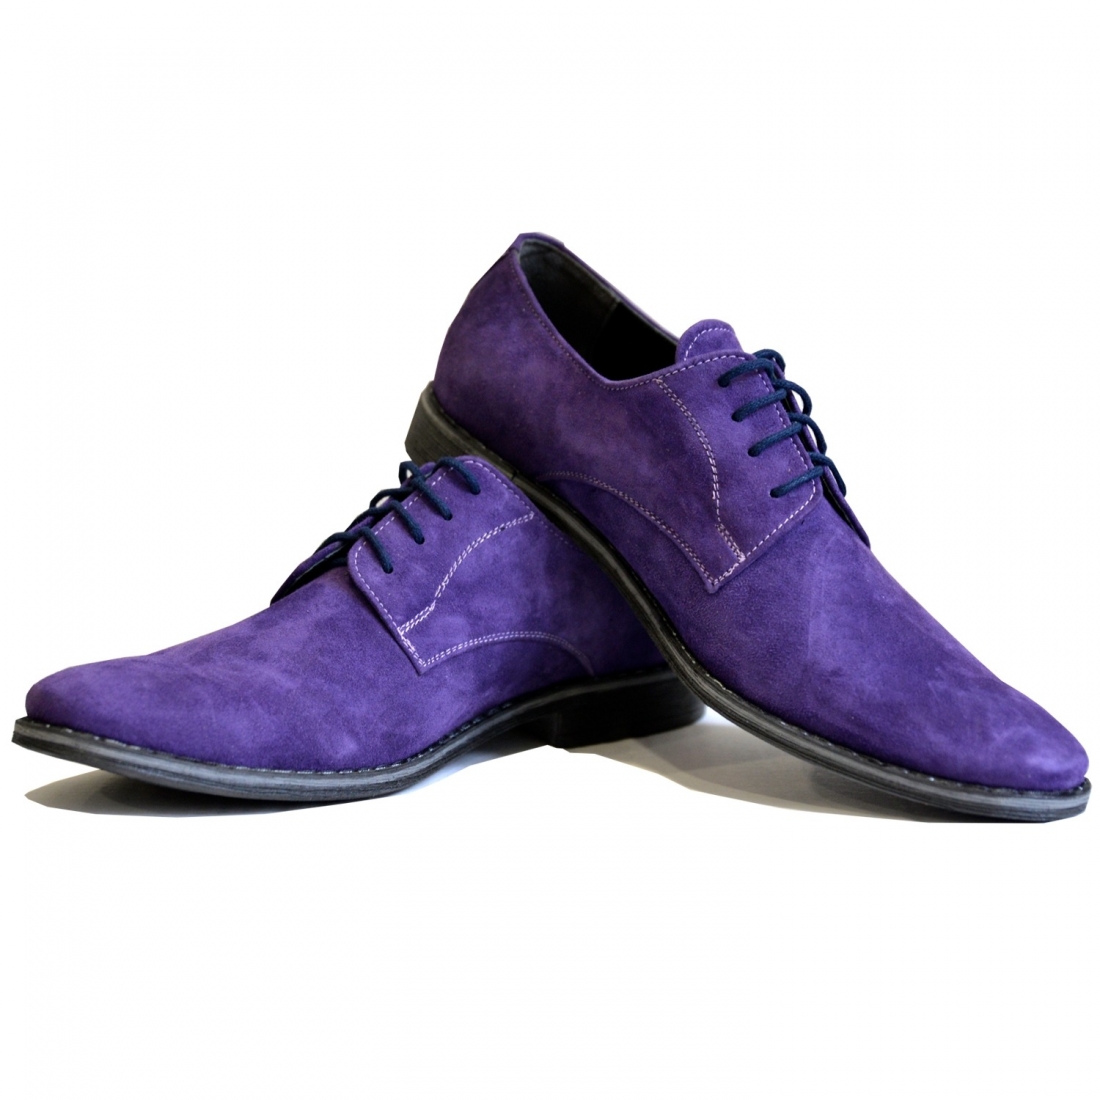 Modello Arrio - Zapatos Clásicos - Handmade Colorful Italian Leather Shoes